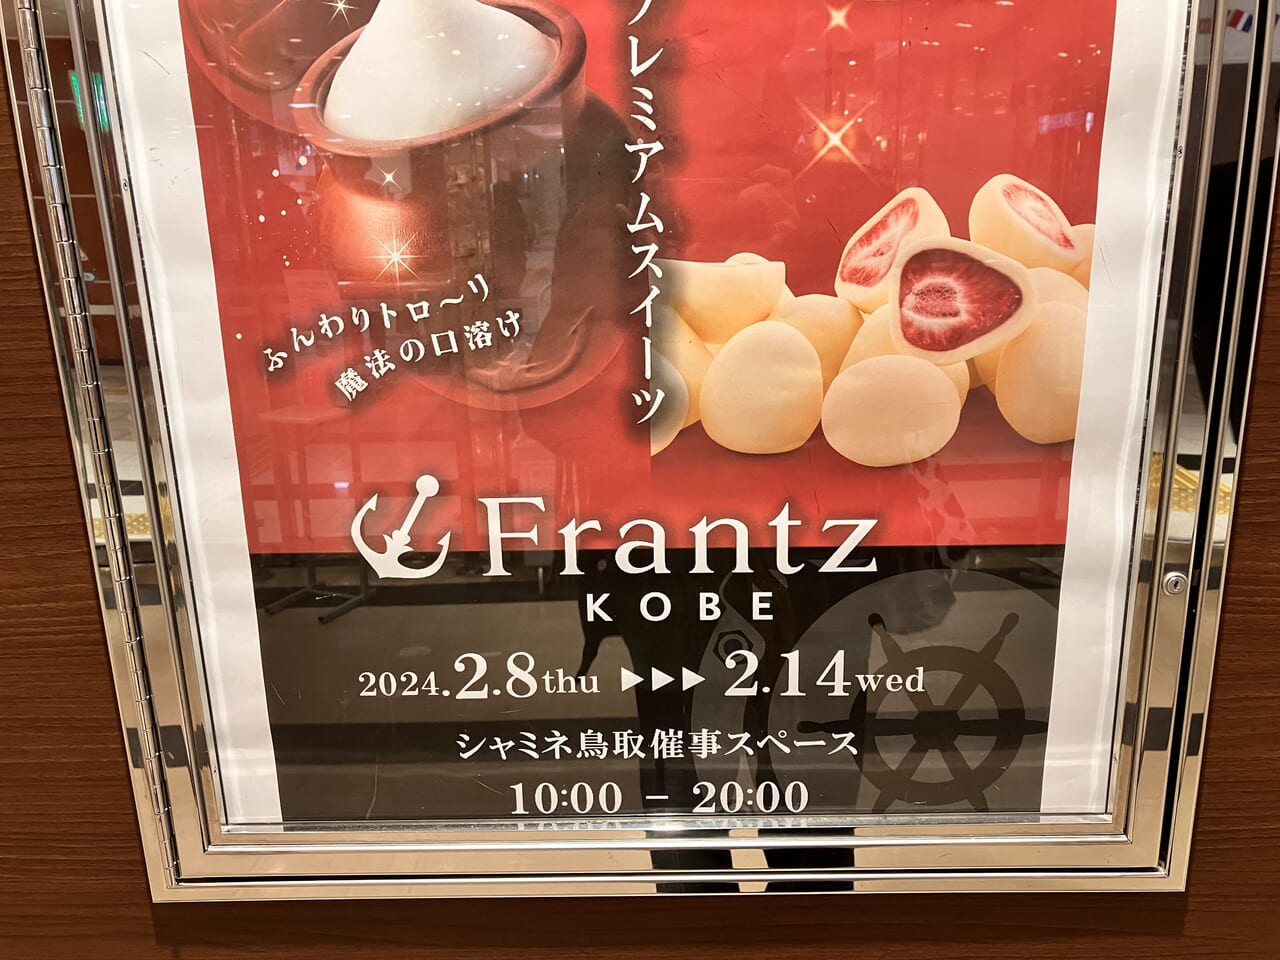 シャミネ鳥取の神戸フランツ催事出店広告